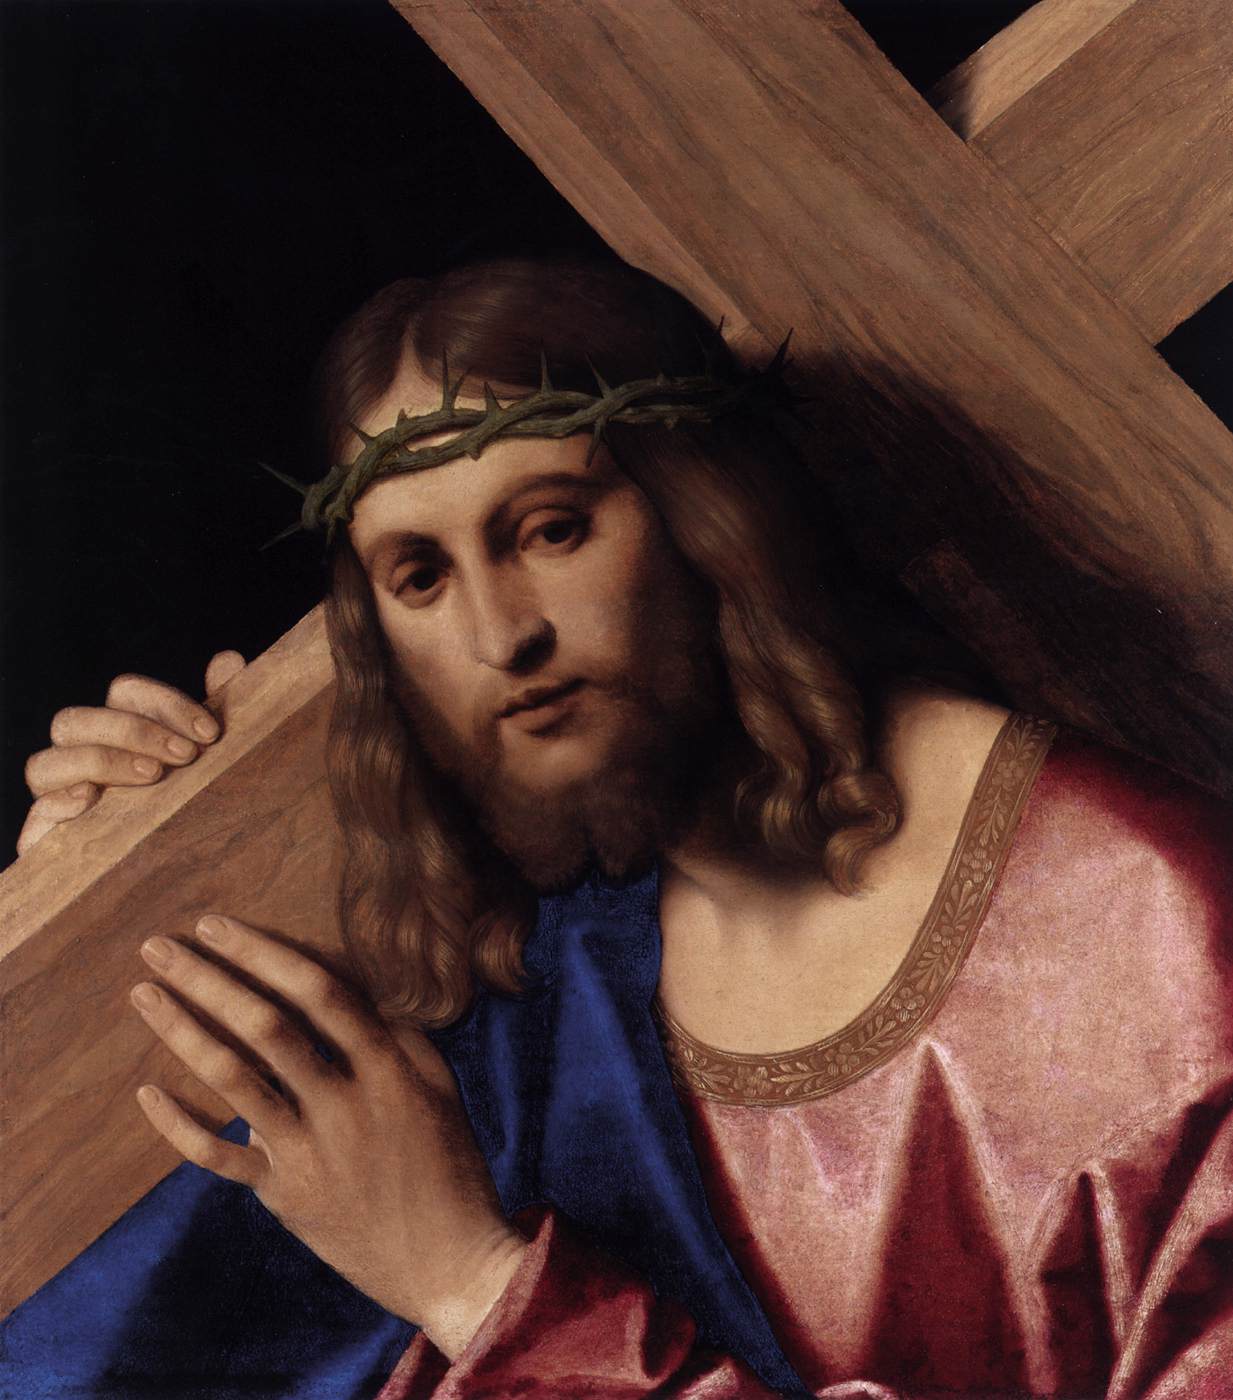 Christus trägt das Kreuz